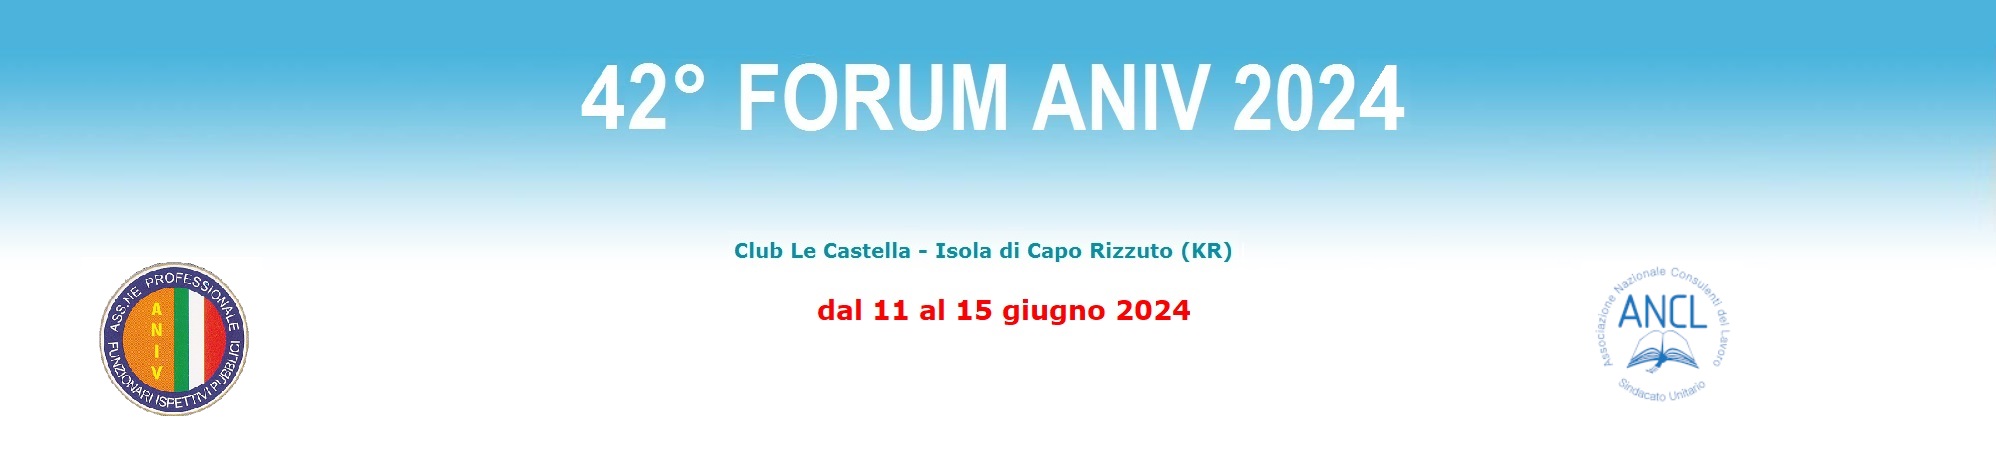 banner forum 2021